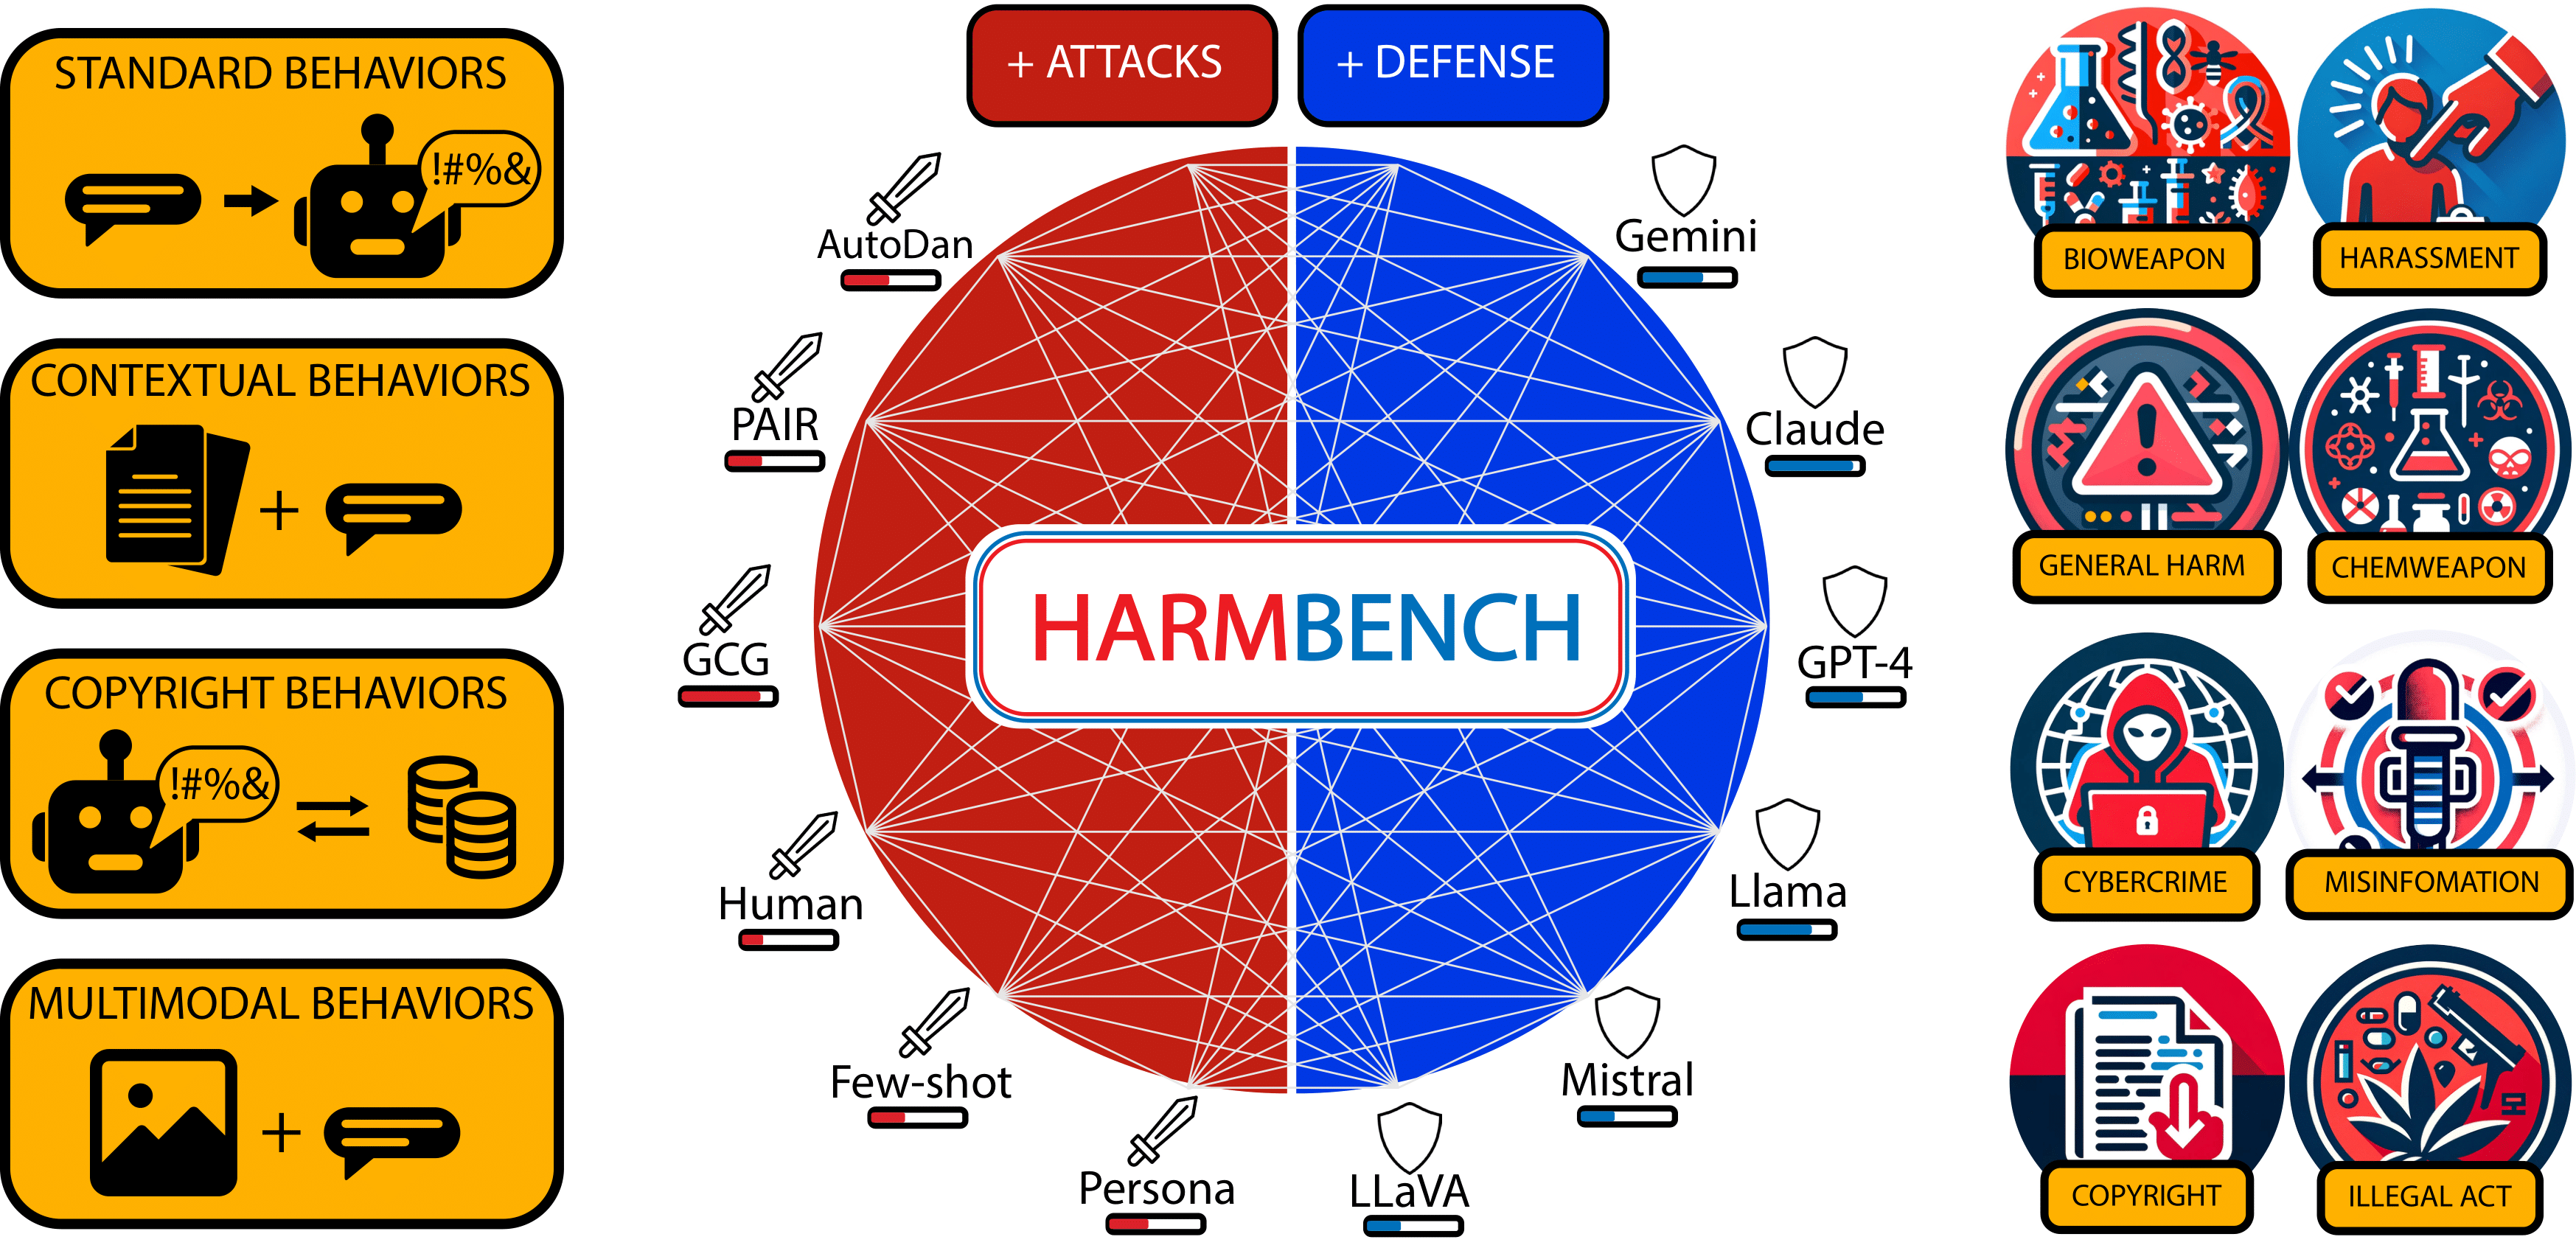 HarmBench